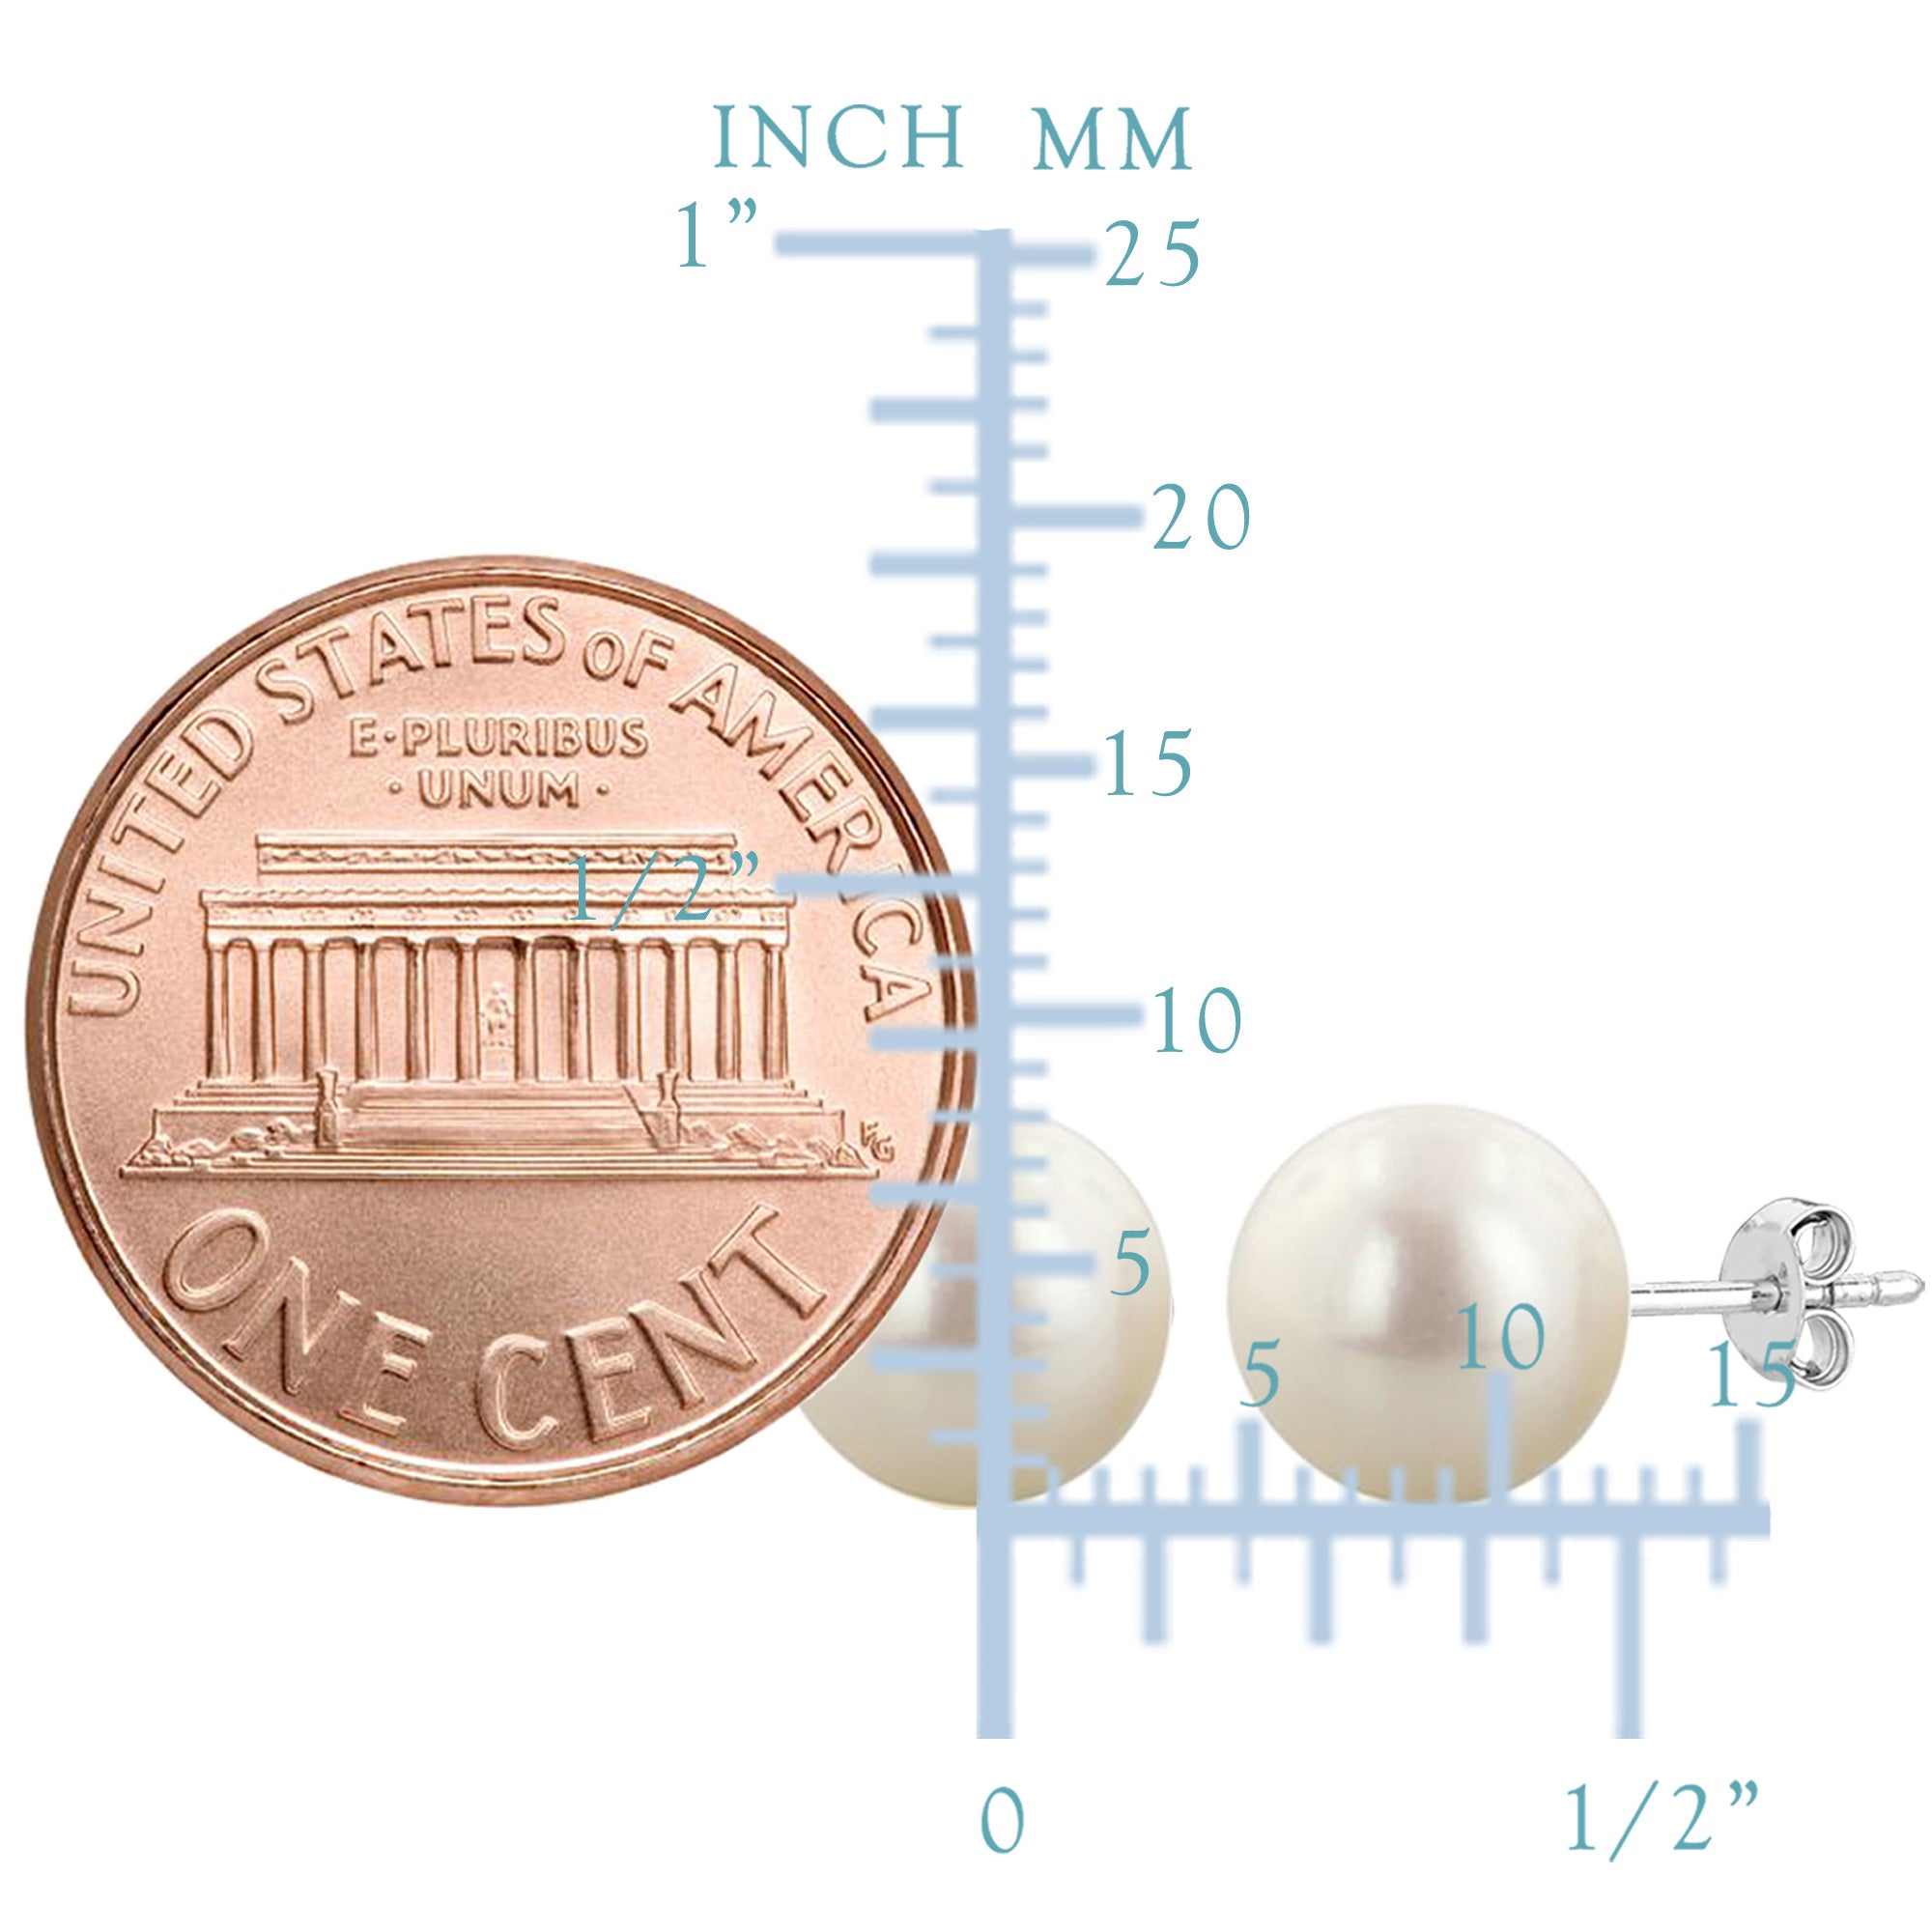 Orecchini a bottone con perle d'acqua dolce bianche da 4 mm in argento sterling con finitura rodiata, gioielli di design per uomini e donne